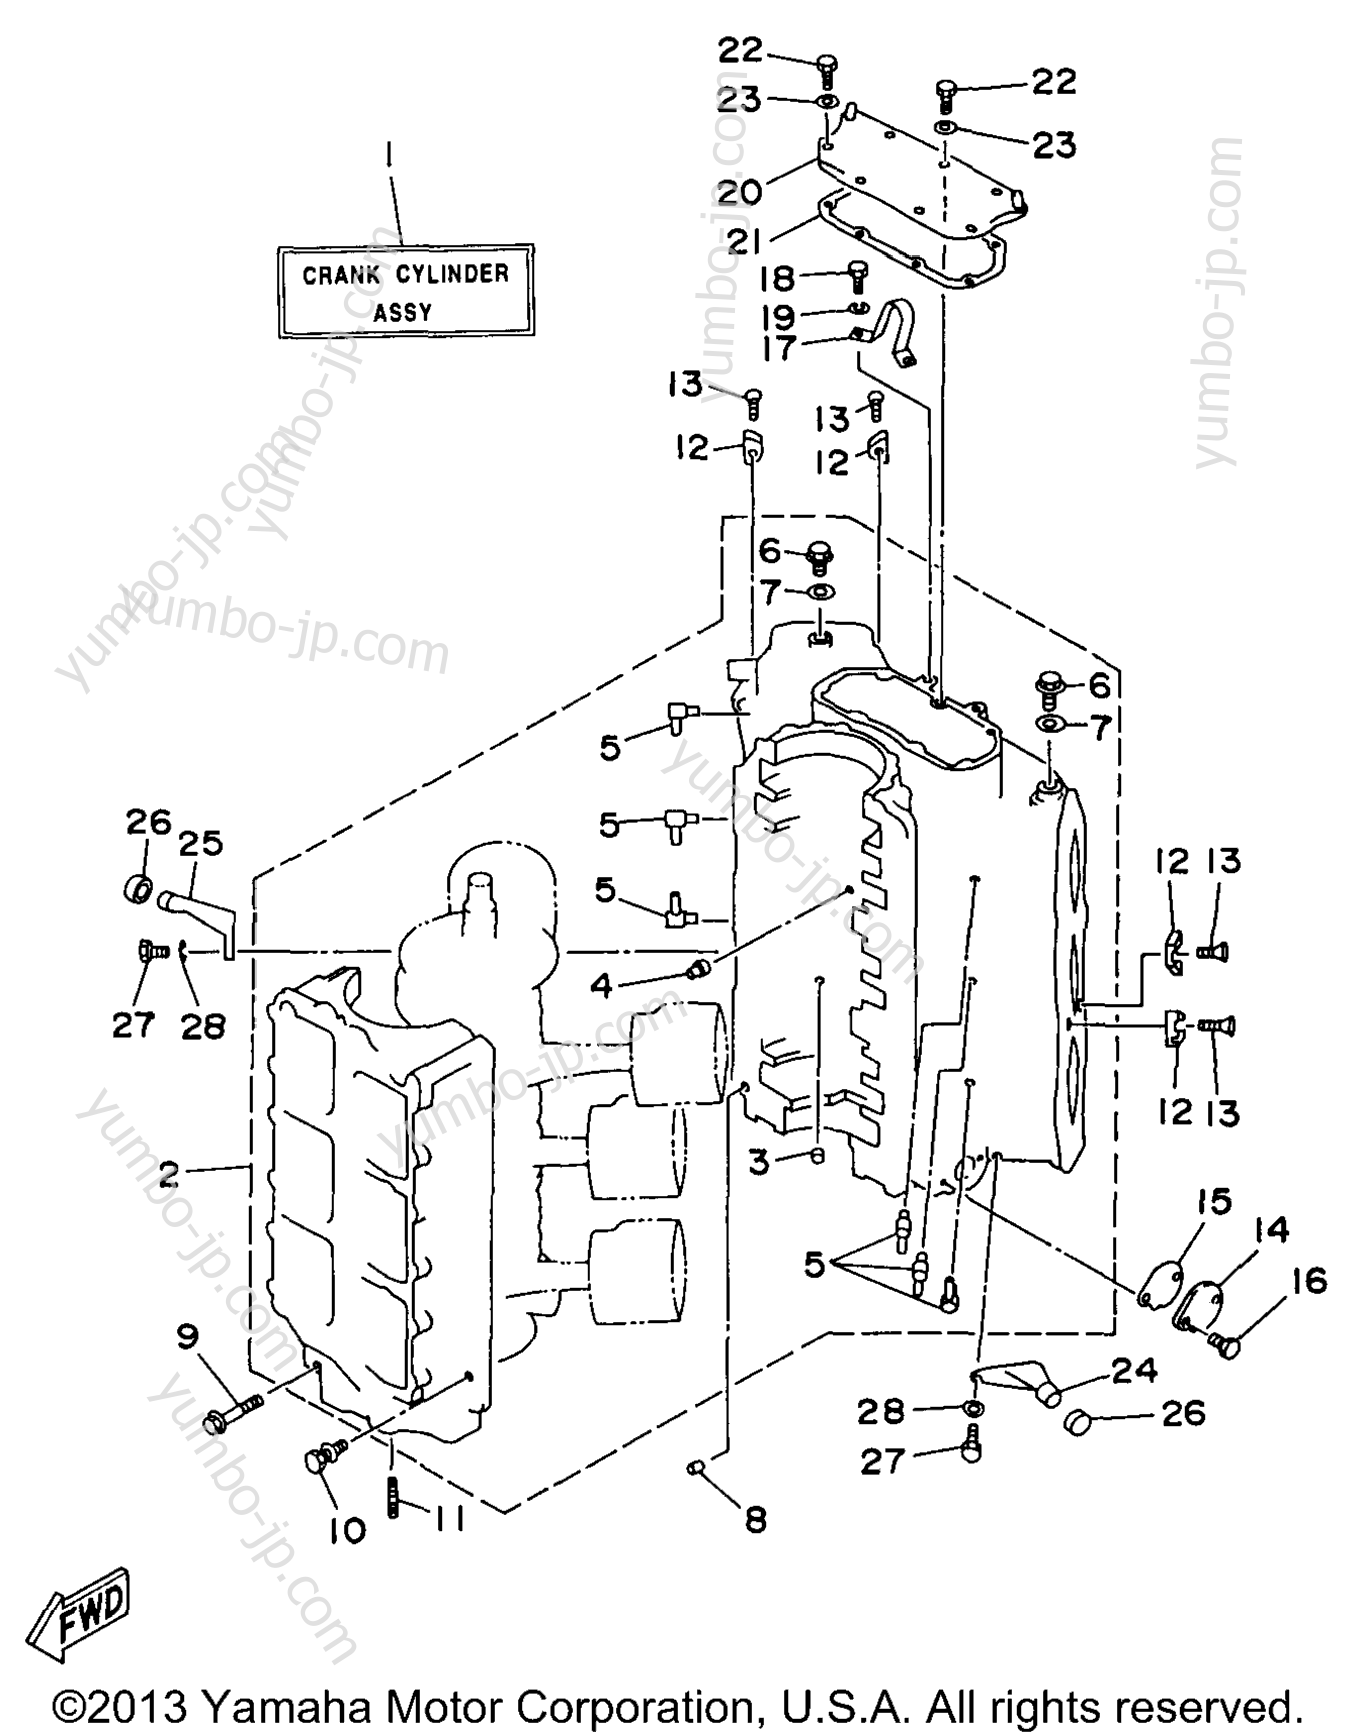 Cylinder Crankcase 1 для лодочных моторов YAMAHA C150TLRX 1999 г.